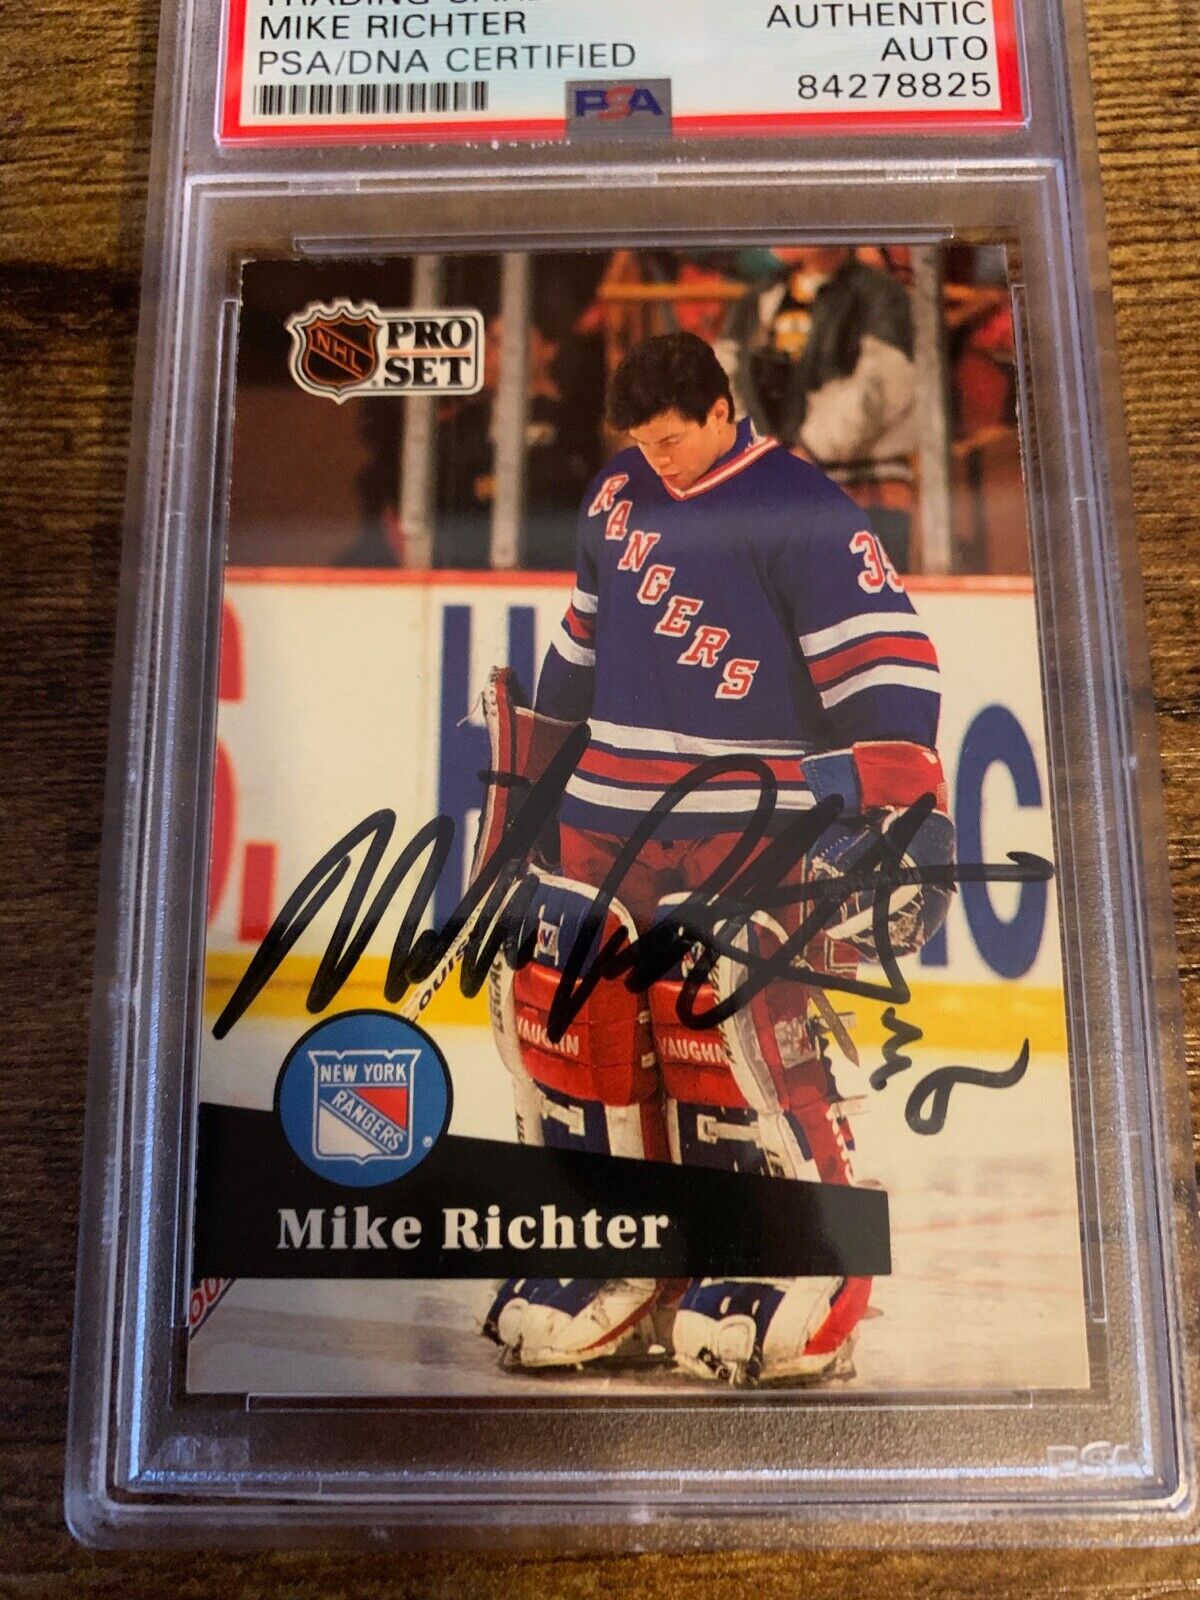 Mike Richter Autographed Signed 1990/91 NHL Pro Set Card PSA Certified Slabbed